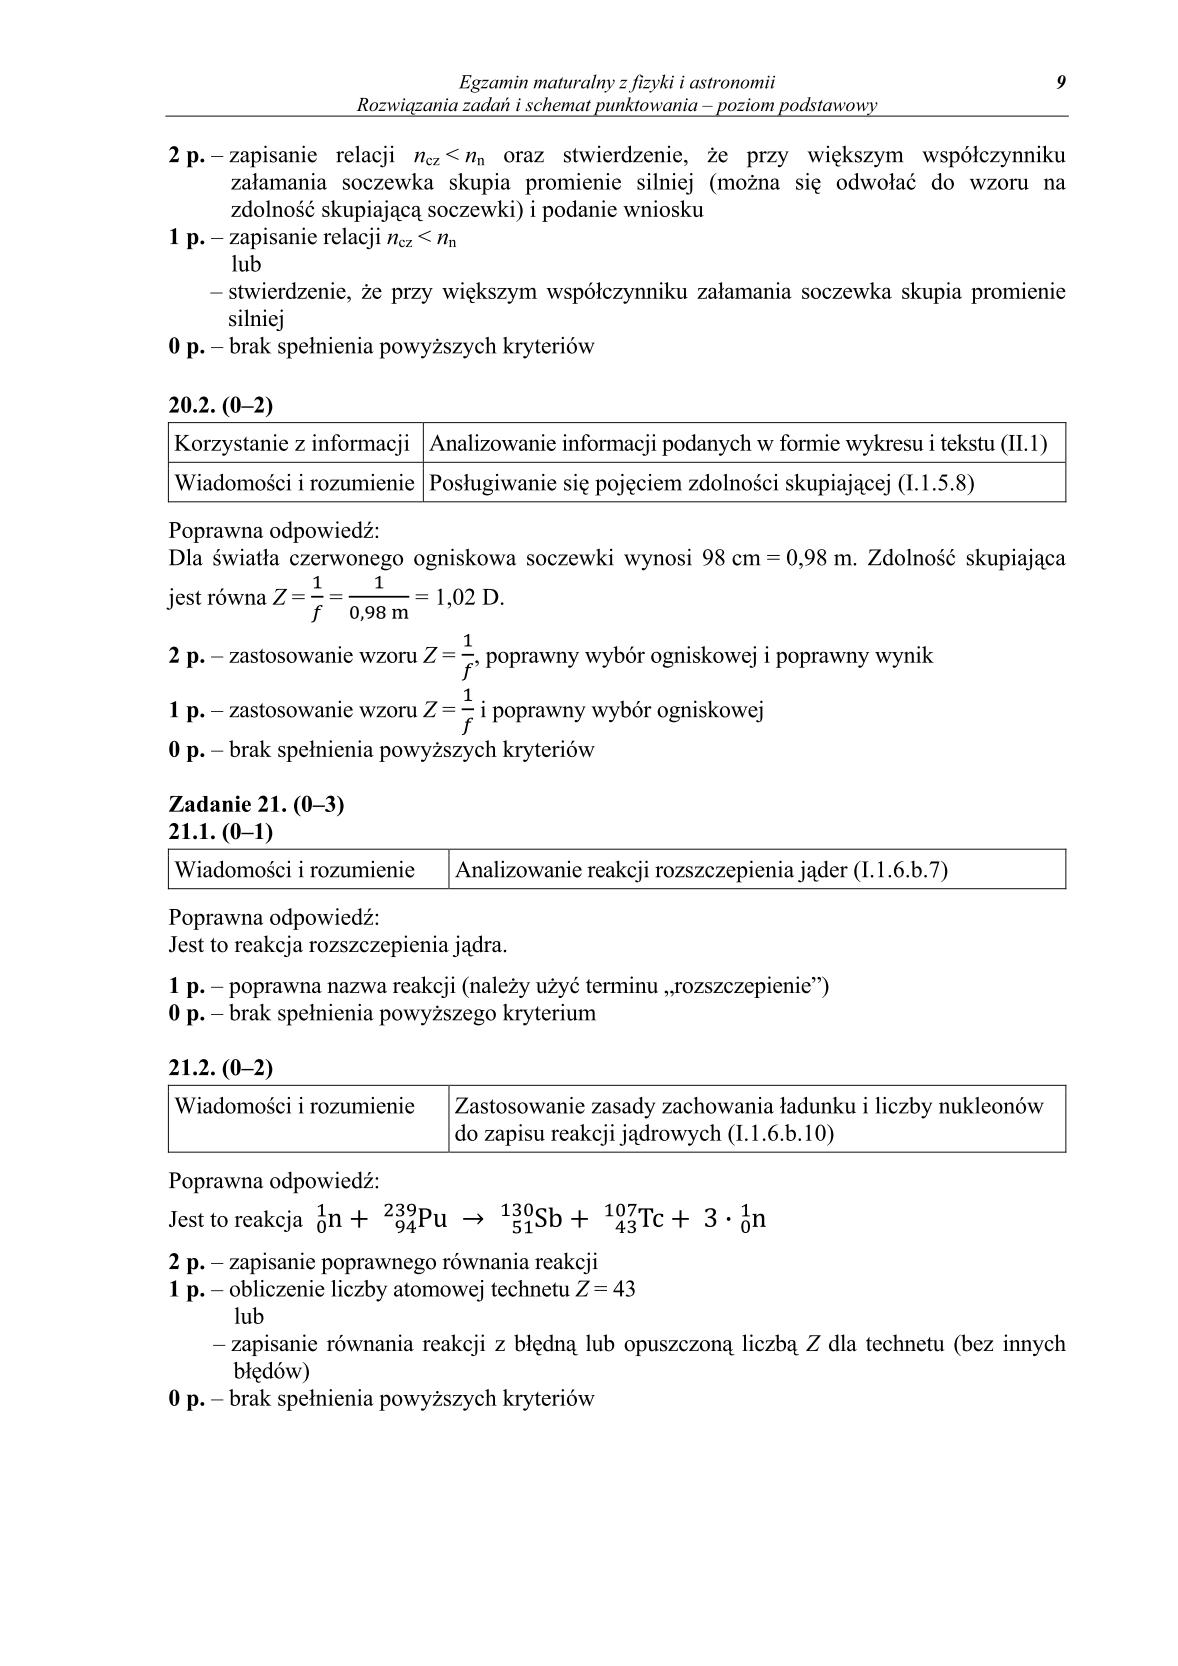 odpowiedzi-fizyka-i-astronomia-poziom-podstawowy-matura-2014-str.9